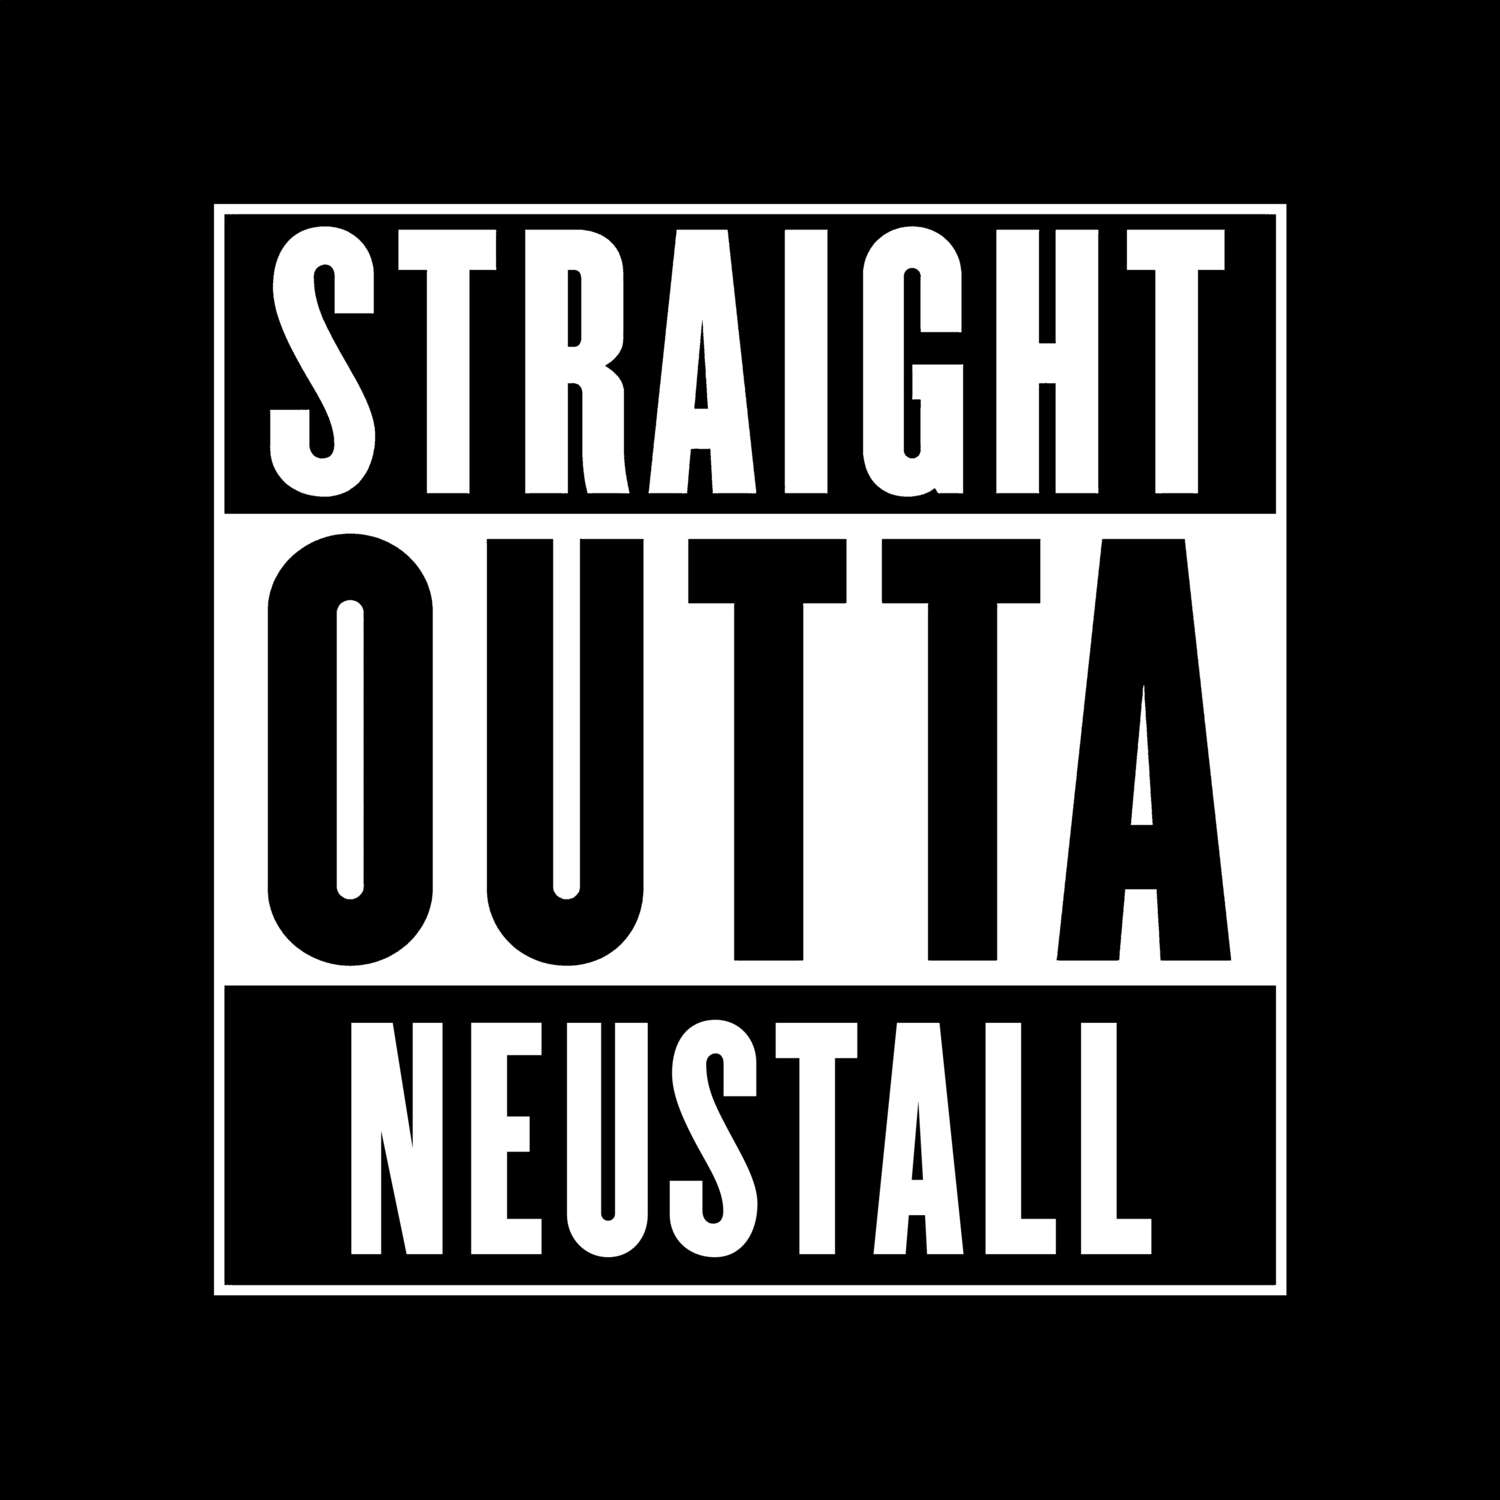 Neustall T-Shirt »Straight Outta«